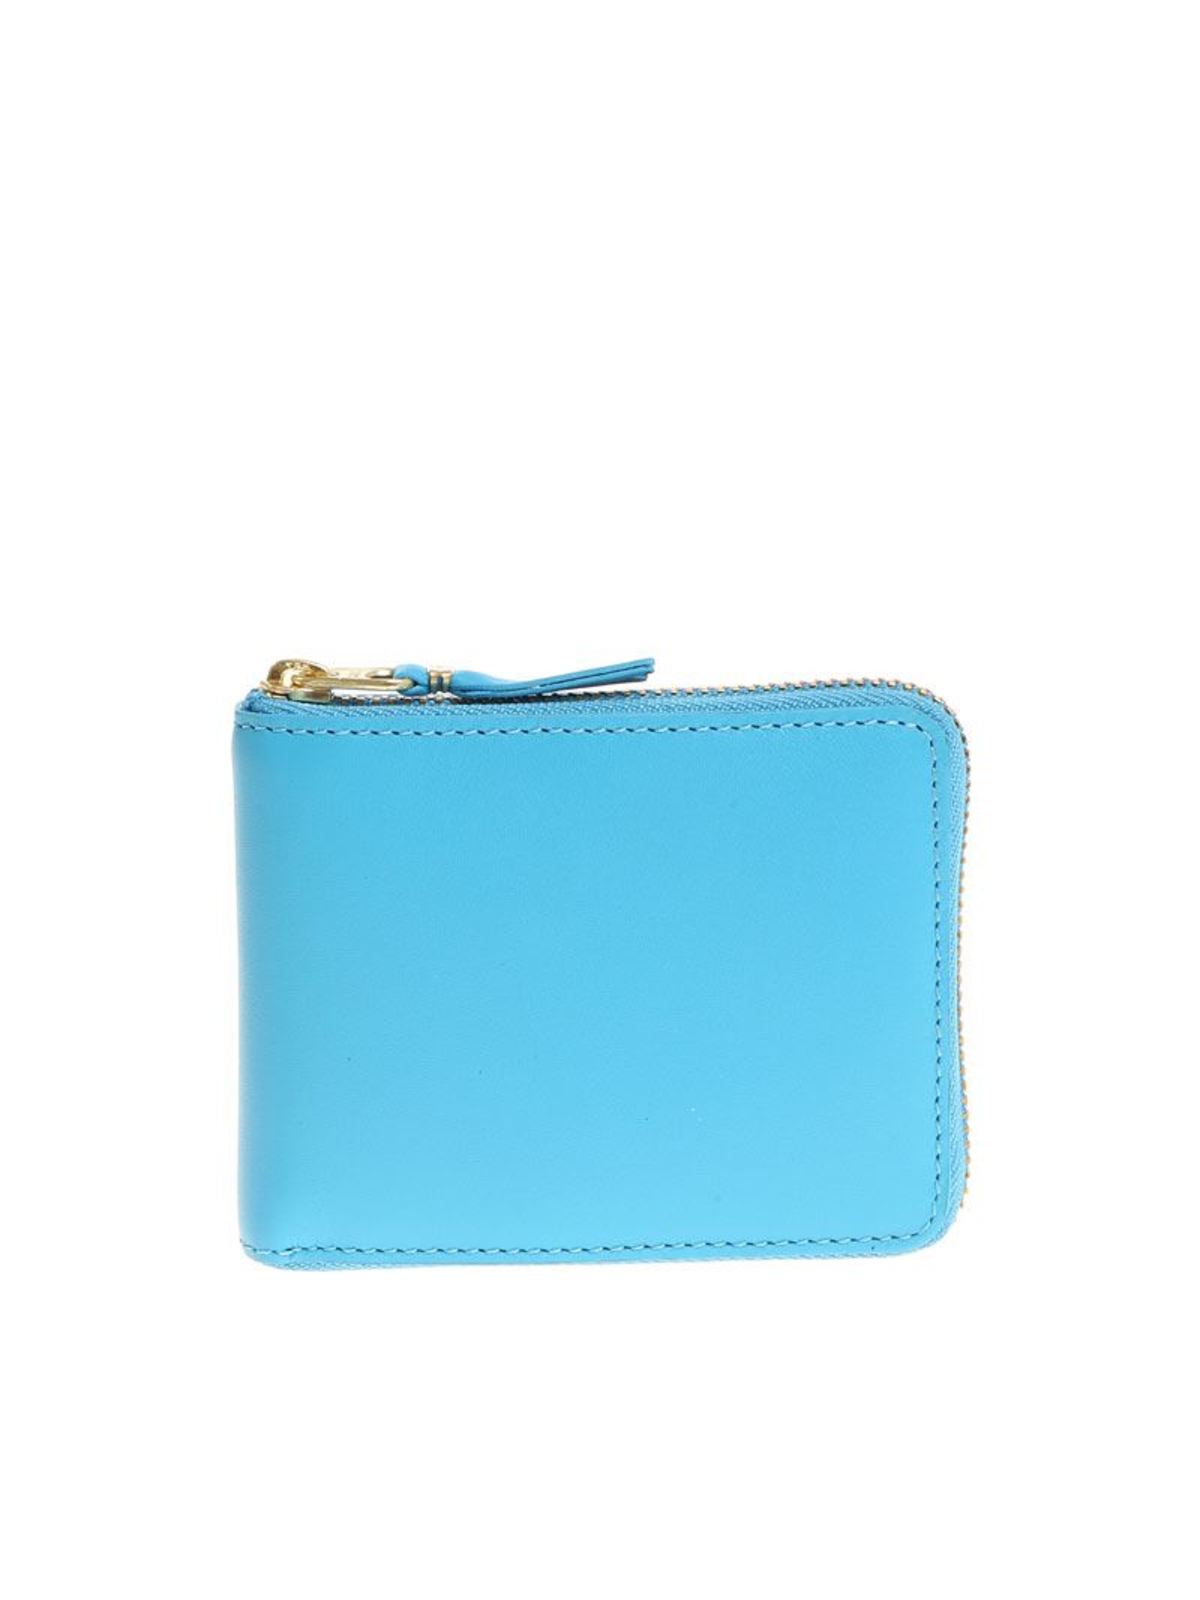 Comme Des Garçons Light Blue Leather Wallet